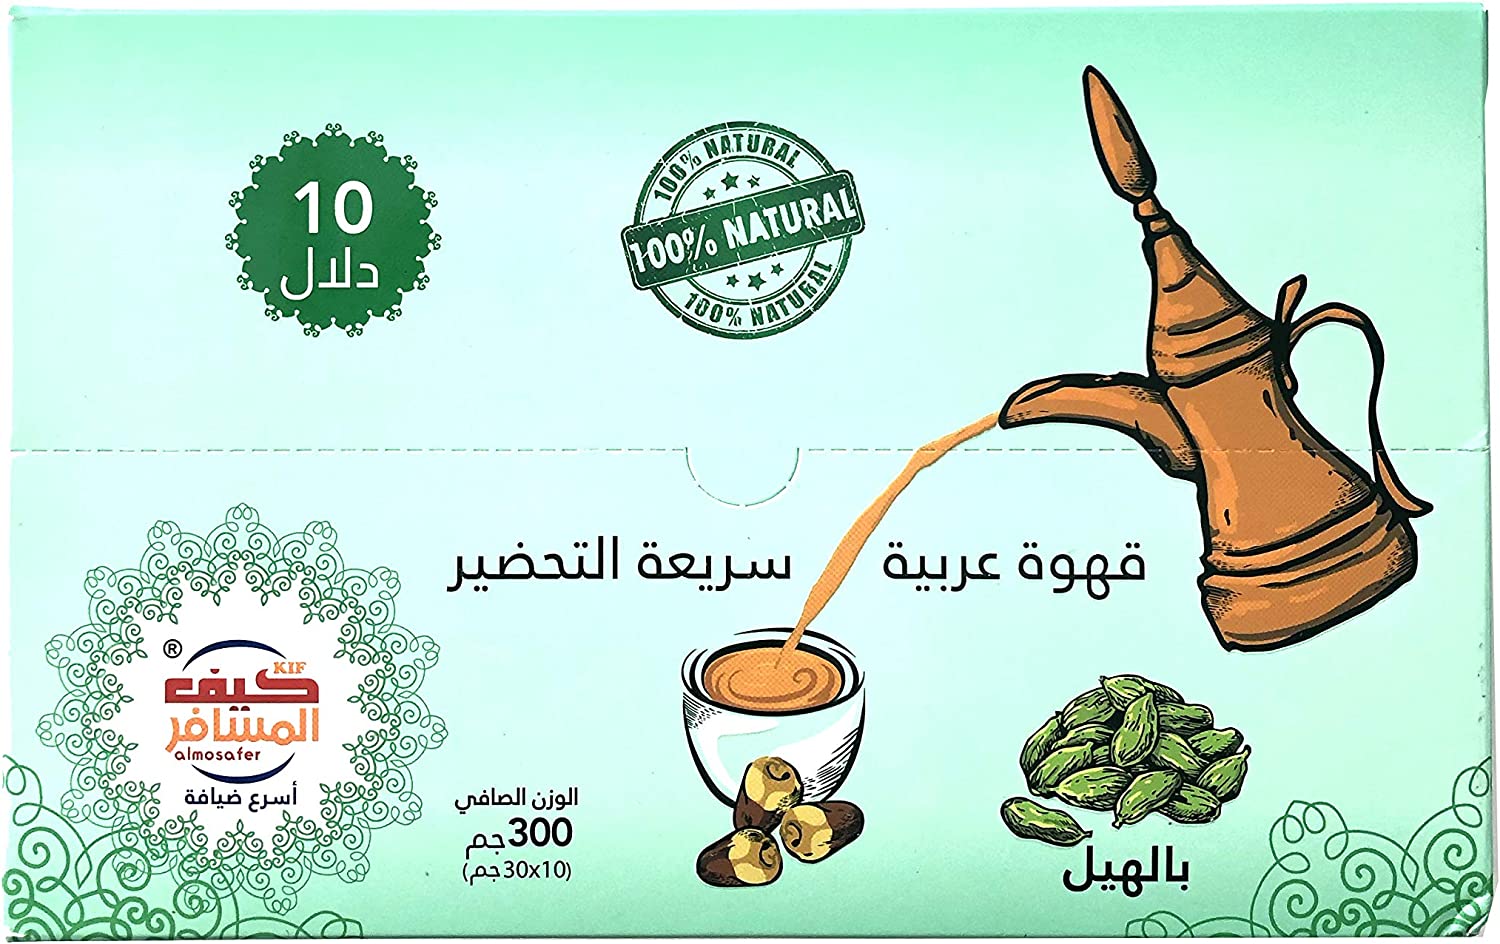 Kif Al Mosafer Arabic Coffee With Hail 30grX10pcs  